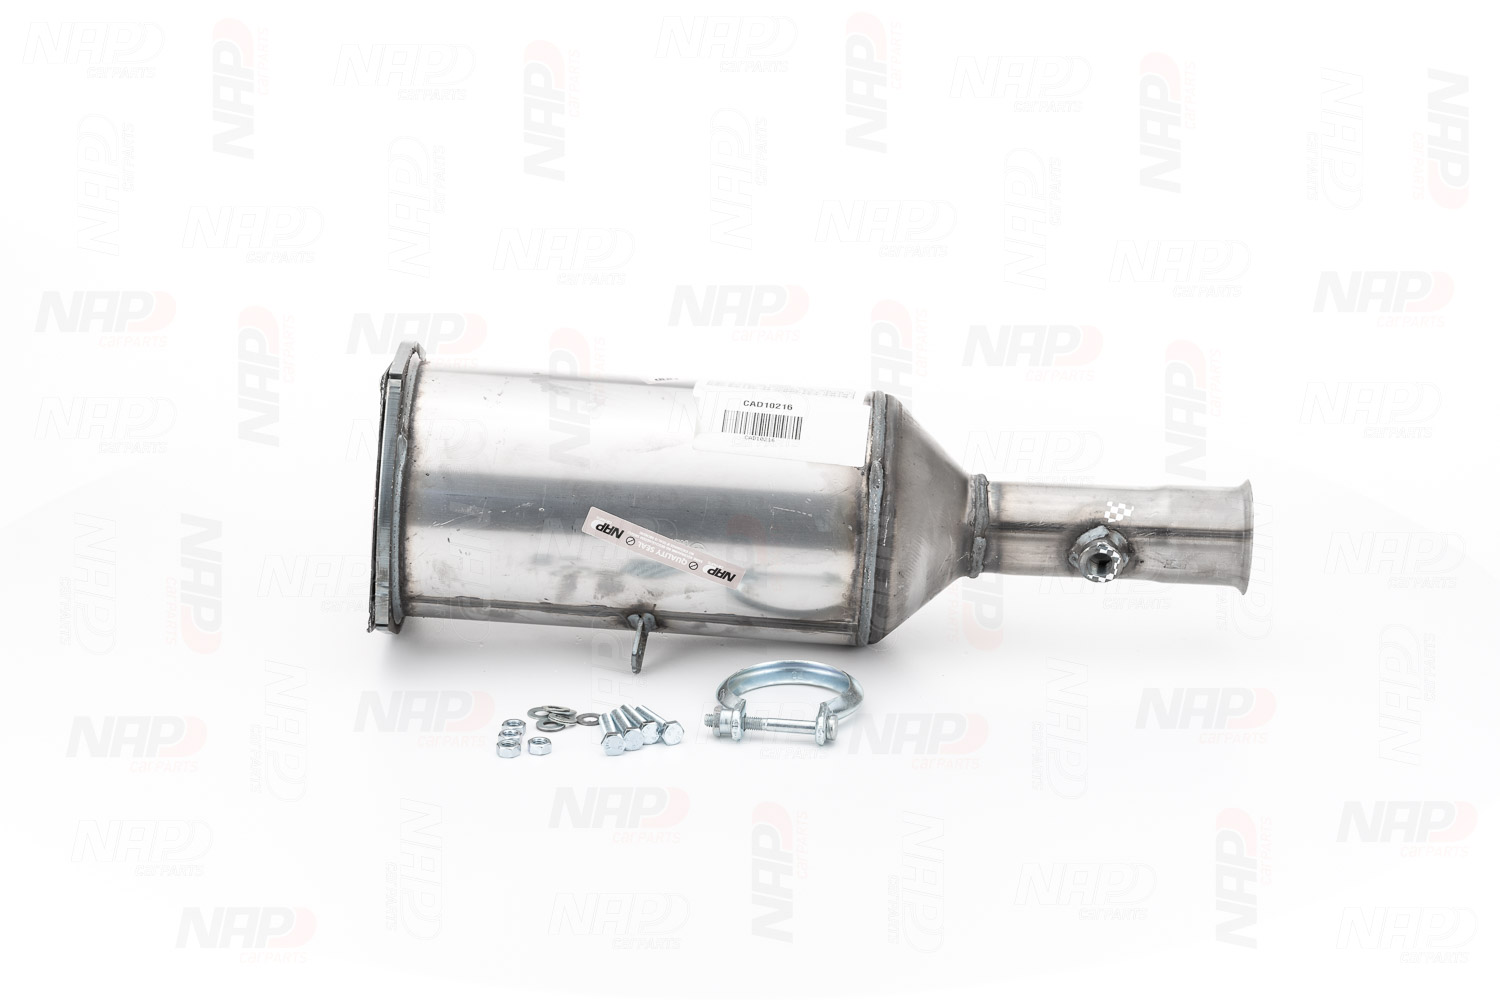 NAP carparts CAD10216 Peugeot 307 2016 Exhaust filter